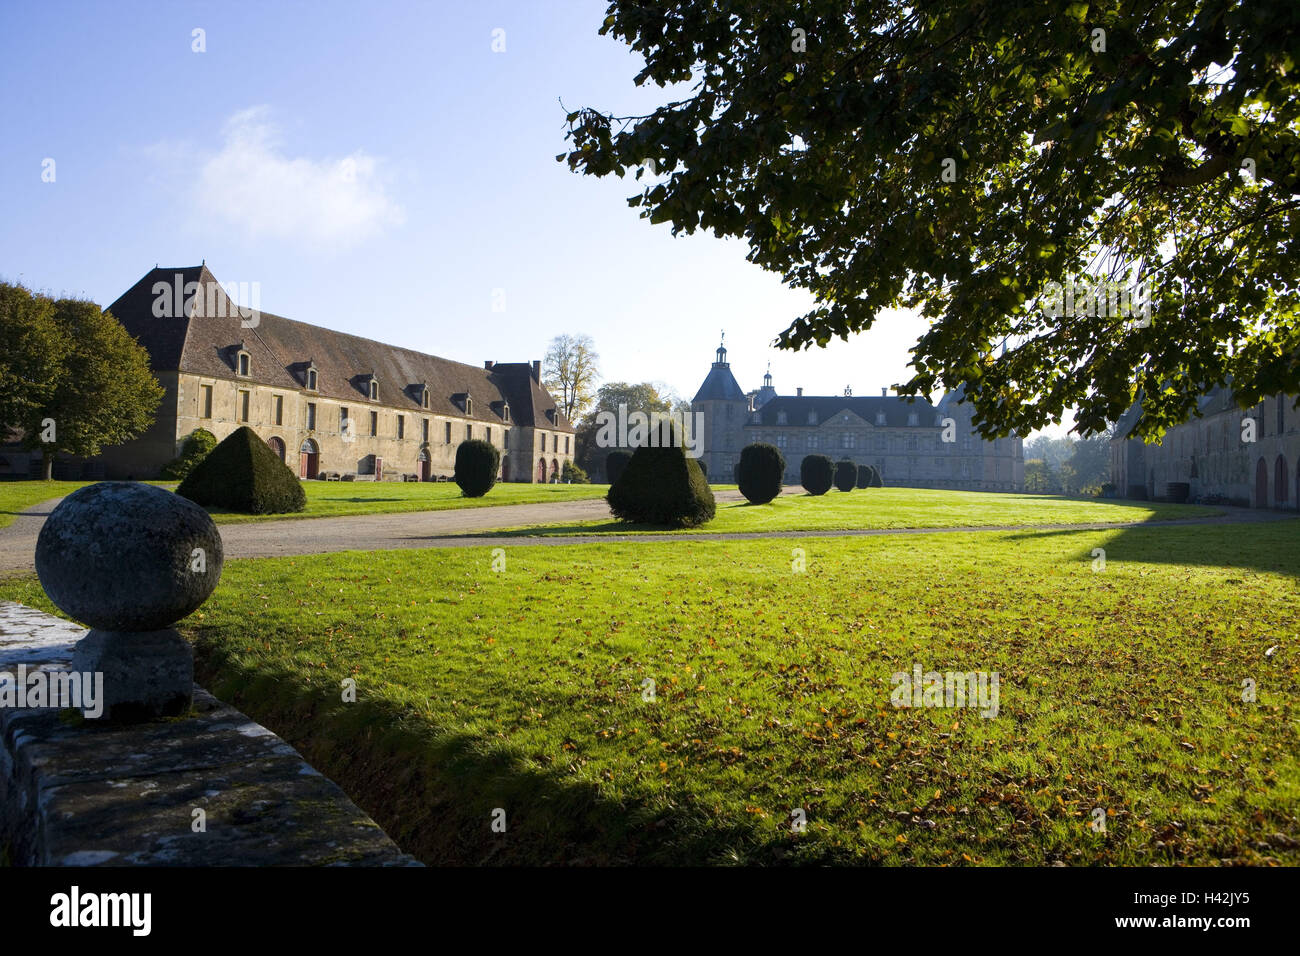 France, Burgundy, Saône-et-Loire, Chateau de Sully, castle grounds, autumn mood, Stock Photo